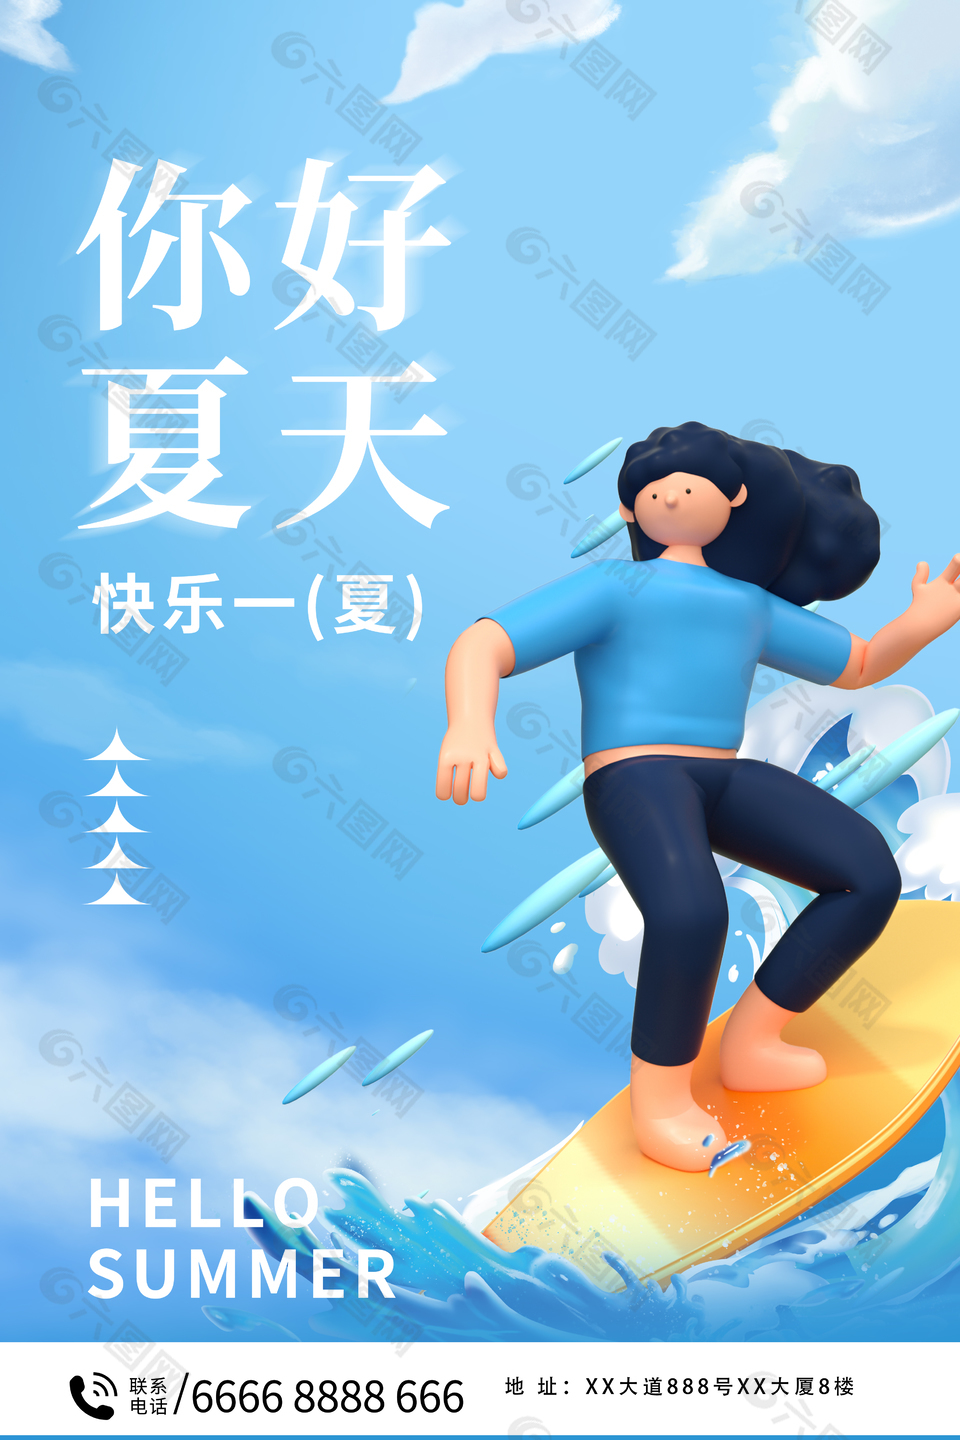 快乐一夏海边冲浪3D女孩海报设计